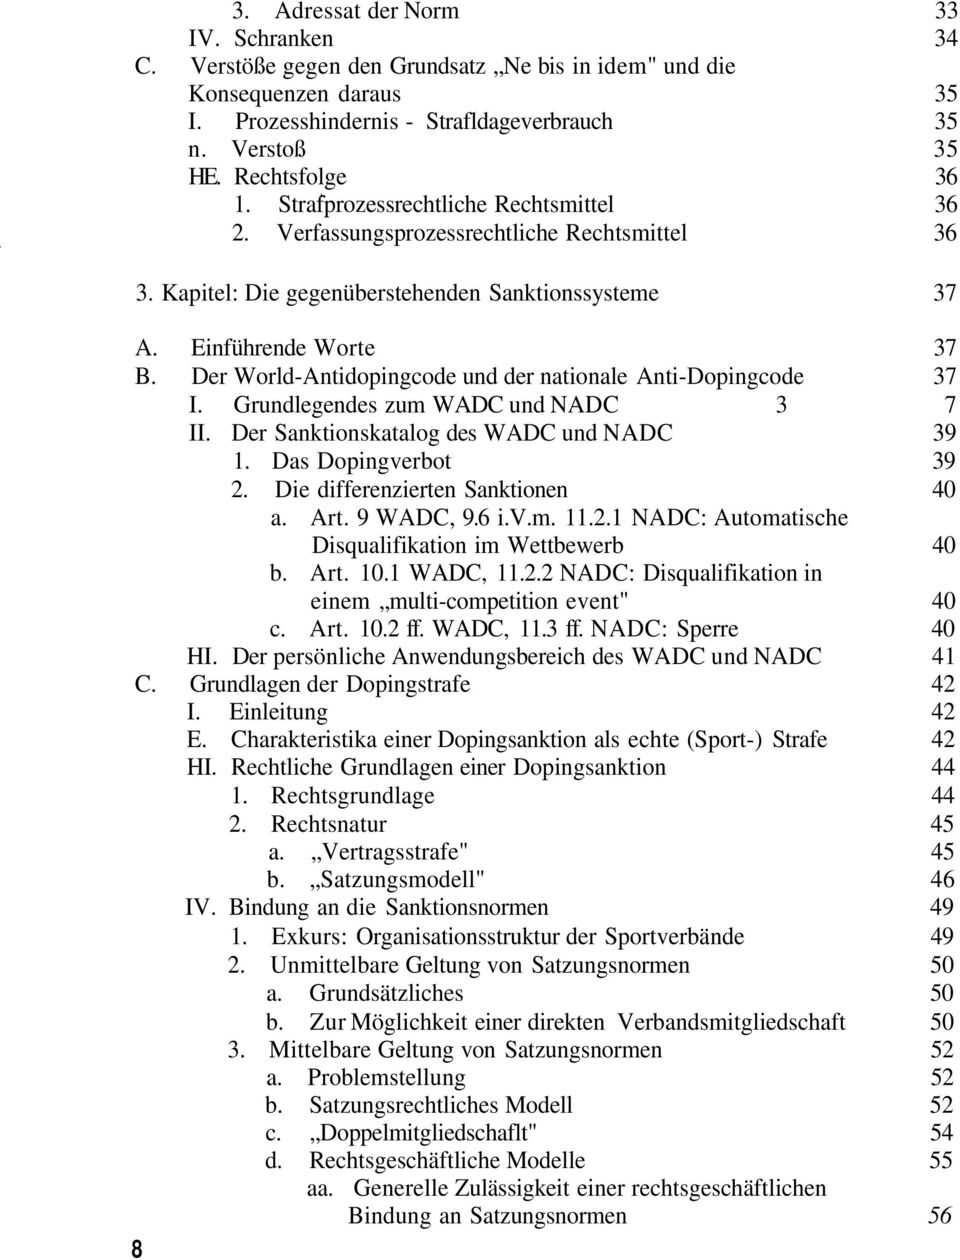 Der World-Antidopingcode und der nationale Anti-Dopingcode 37 I. Grundlegendes zum WADC und NADC 3 7 II. Der Sanktionskatalog des WADC und NADC 39 1. Das Dopingverbot 39 2.